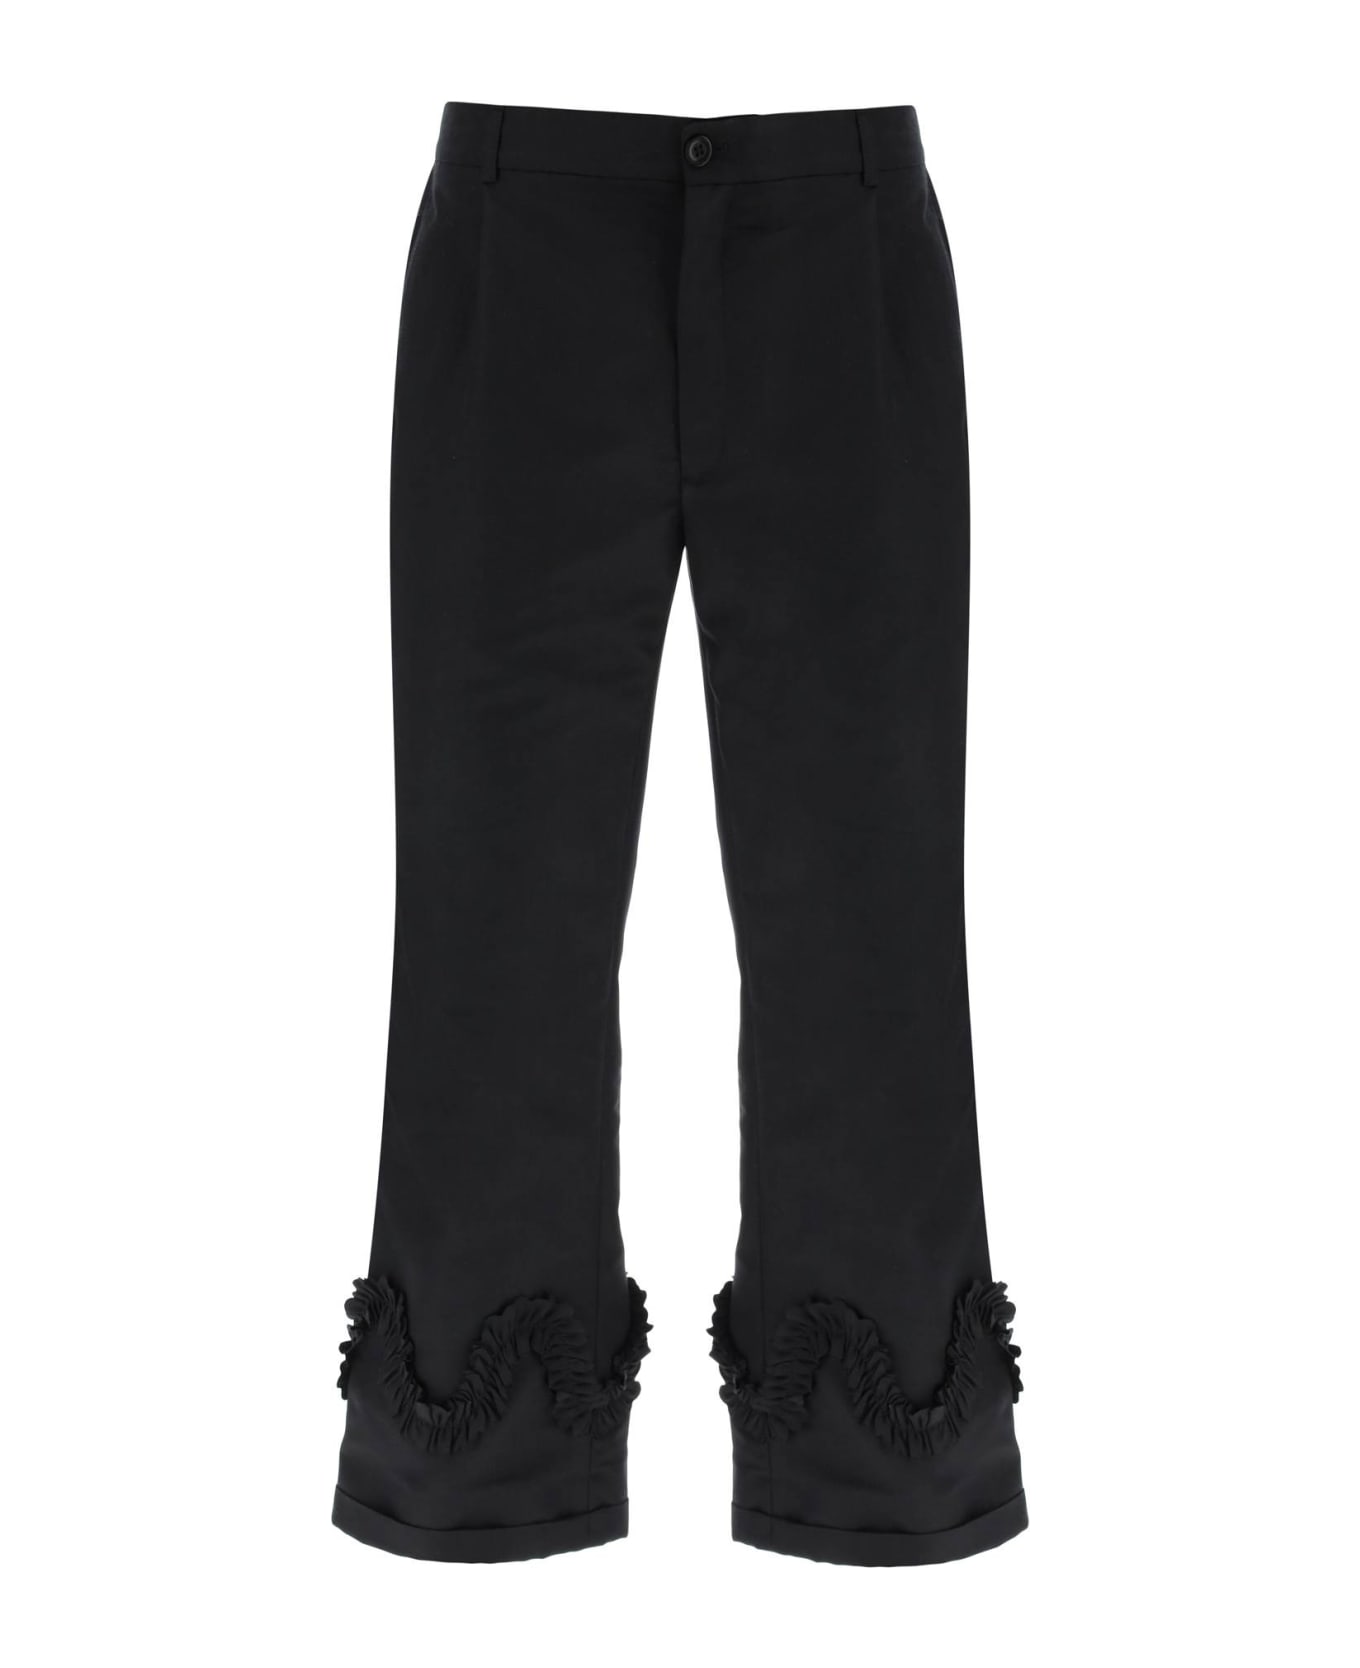 Sky High Farm Ruffled Faille Pants - BLACK (Black)